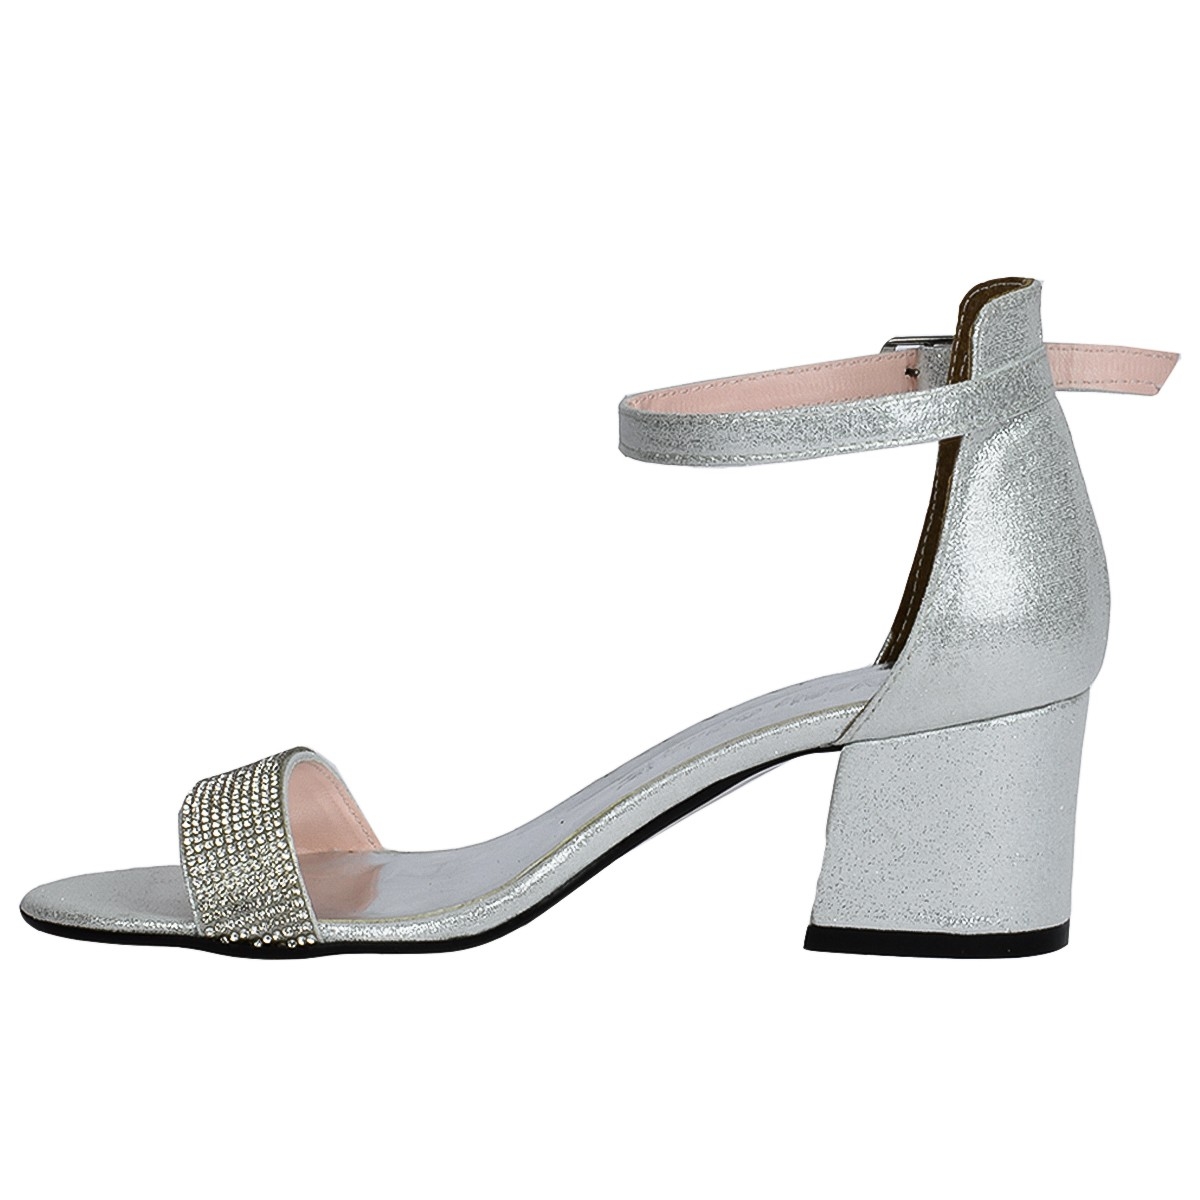 Flo 038-03 Taşlı 5 Cm Topuk Bayan Sandalet Ayakkabı Gümüş. 2